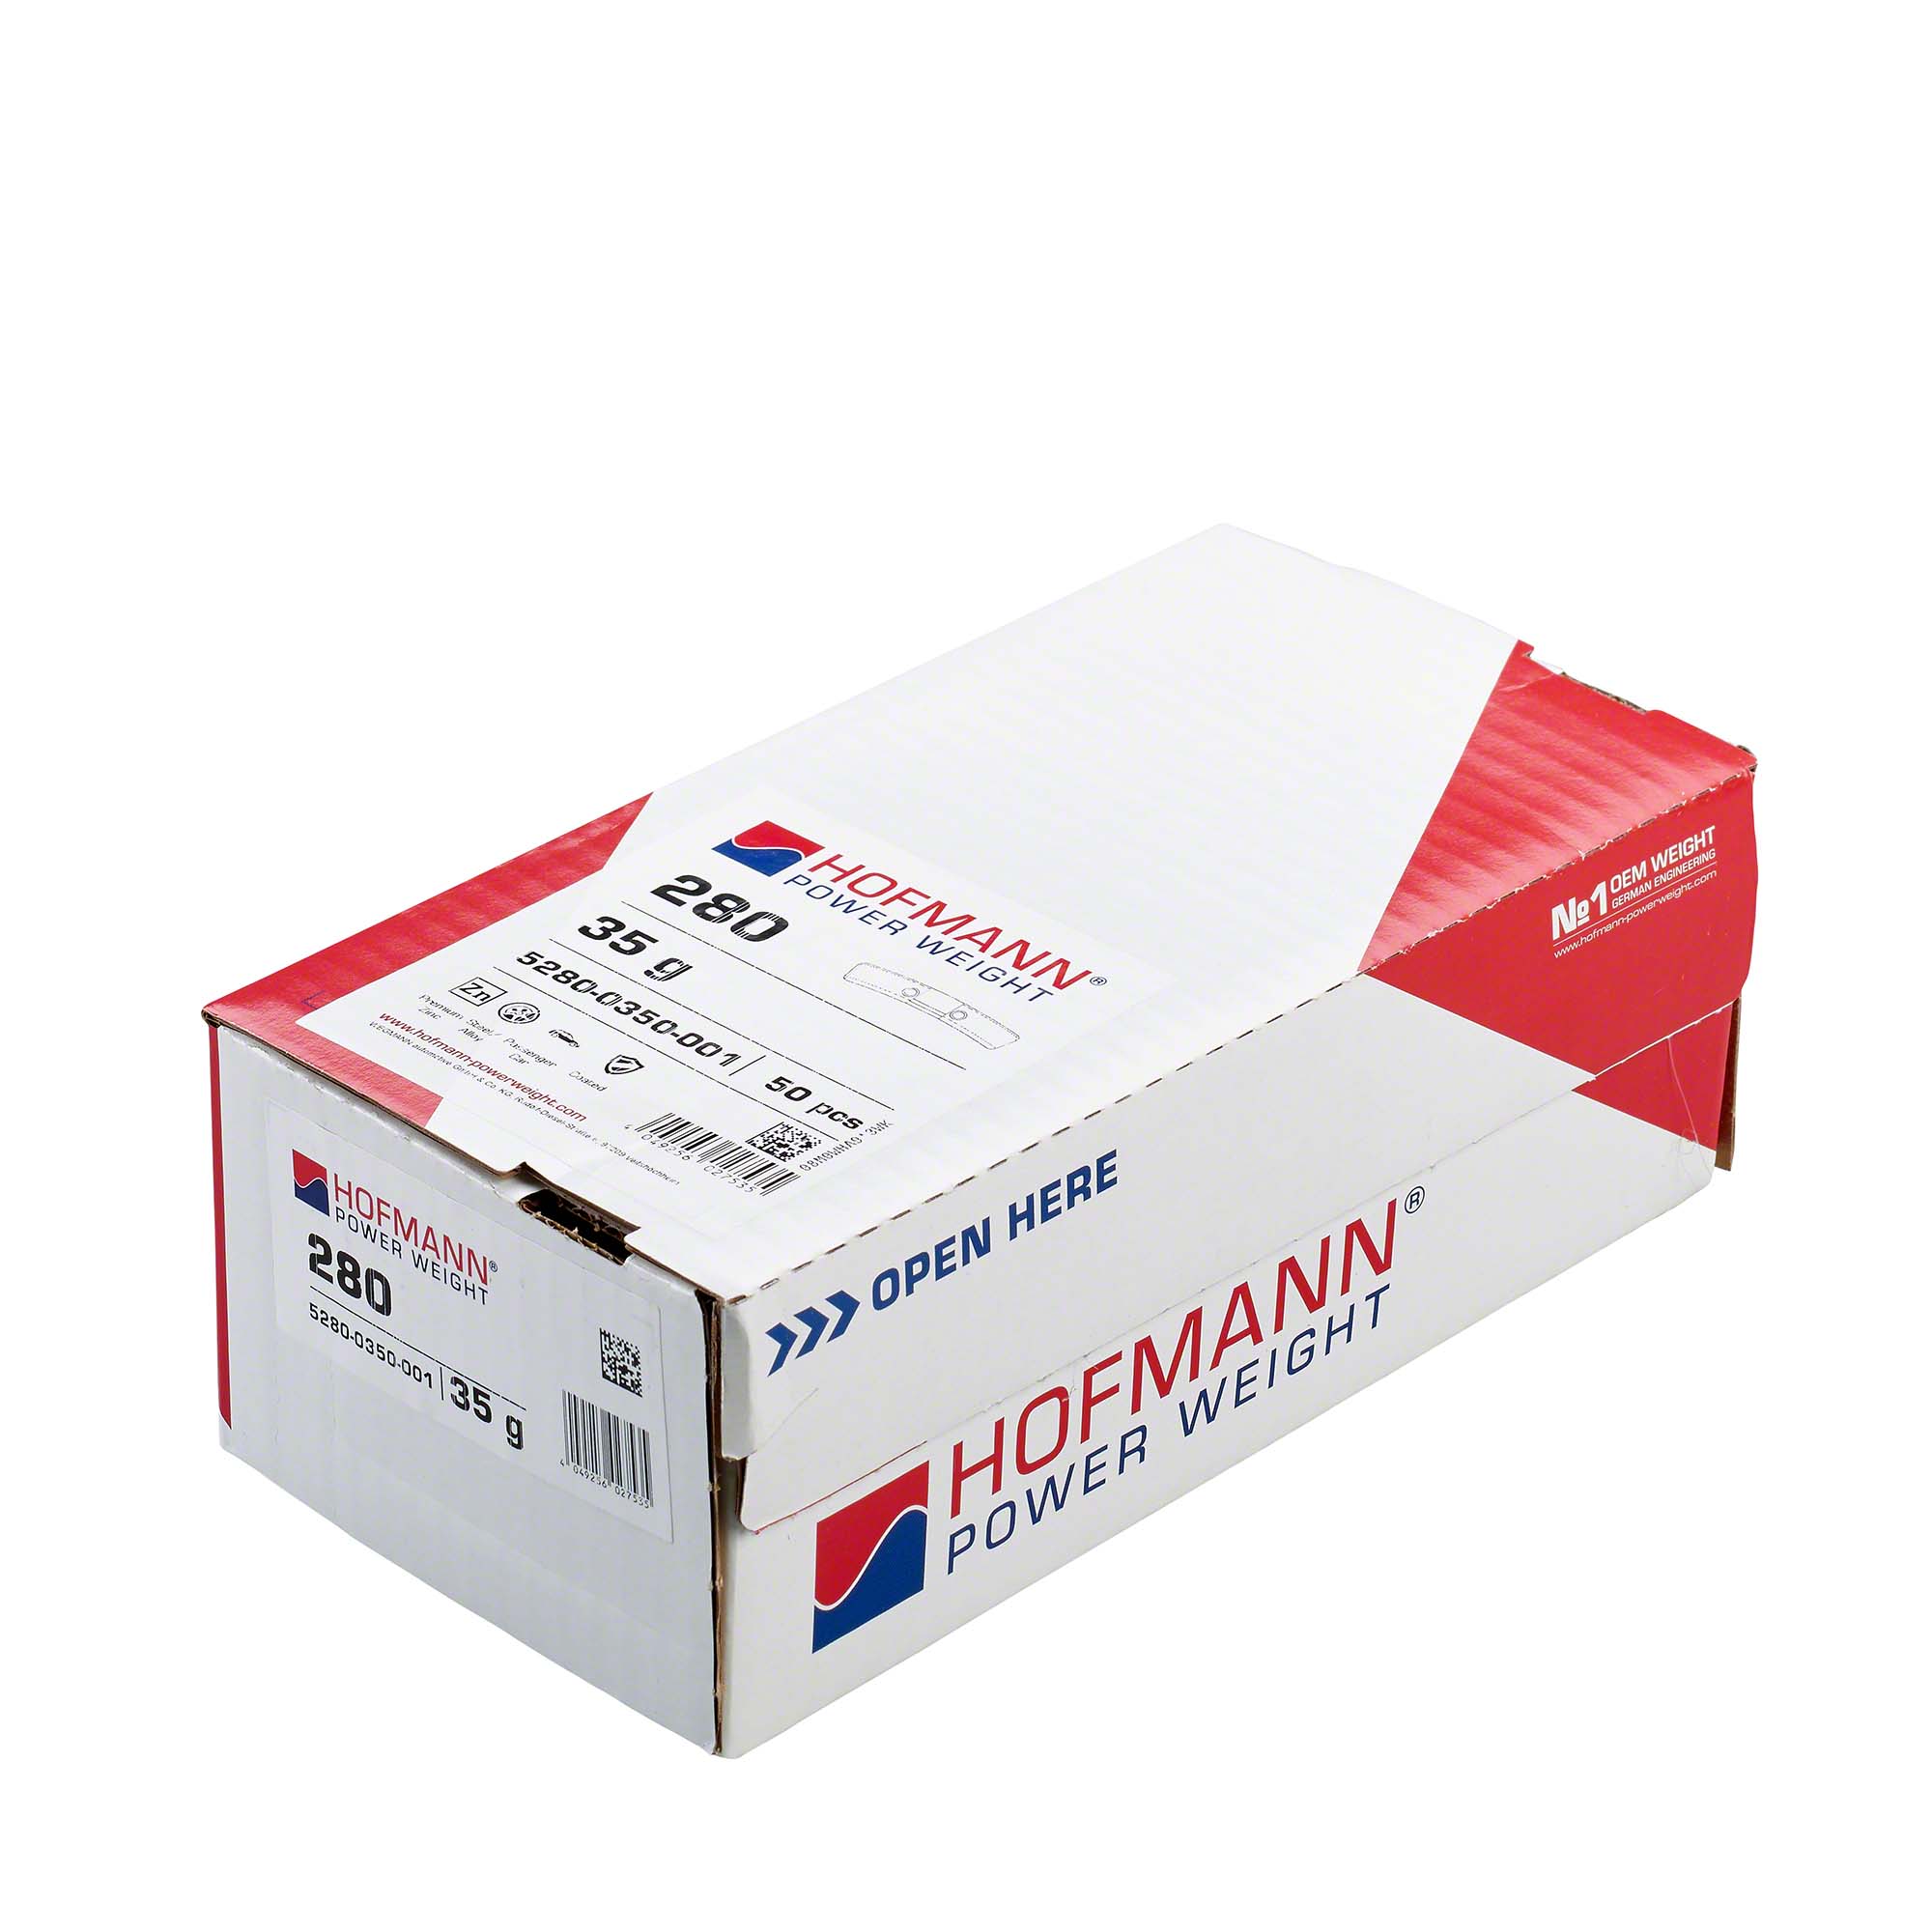 HOFMANN POWER WEIGHT-Sicherheitsgewicht - Typ 280, 35 g, Zink, Silber-5280-0350-001